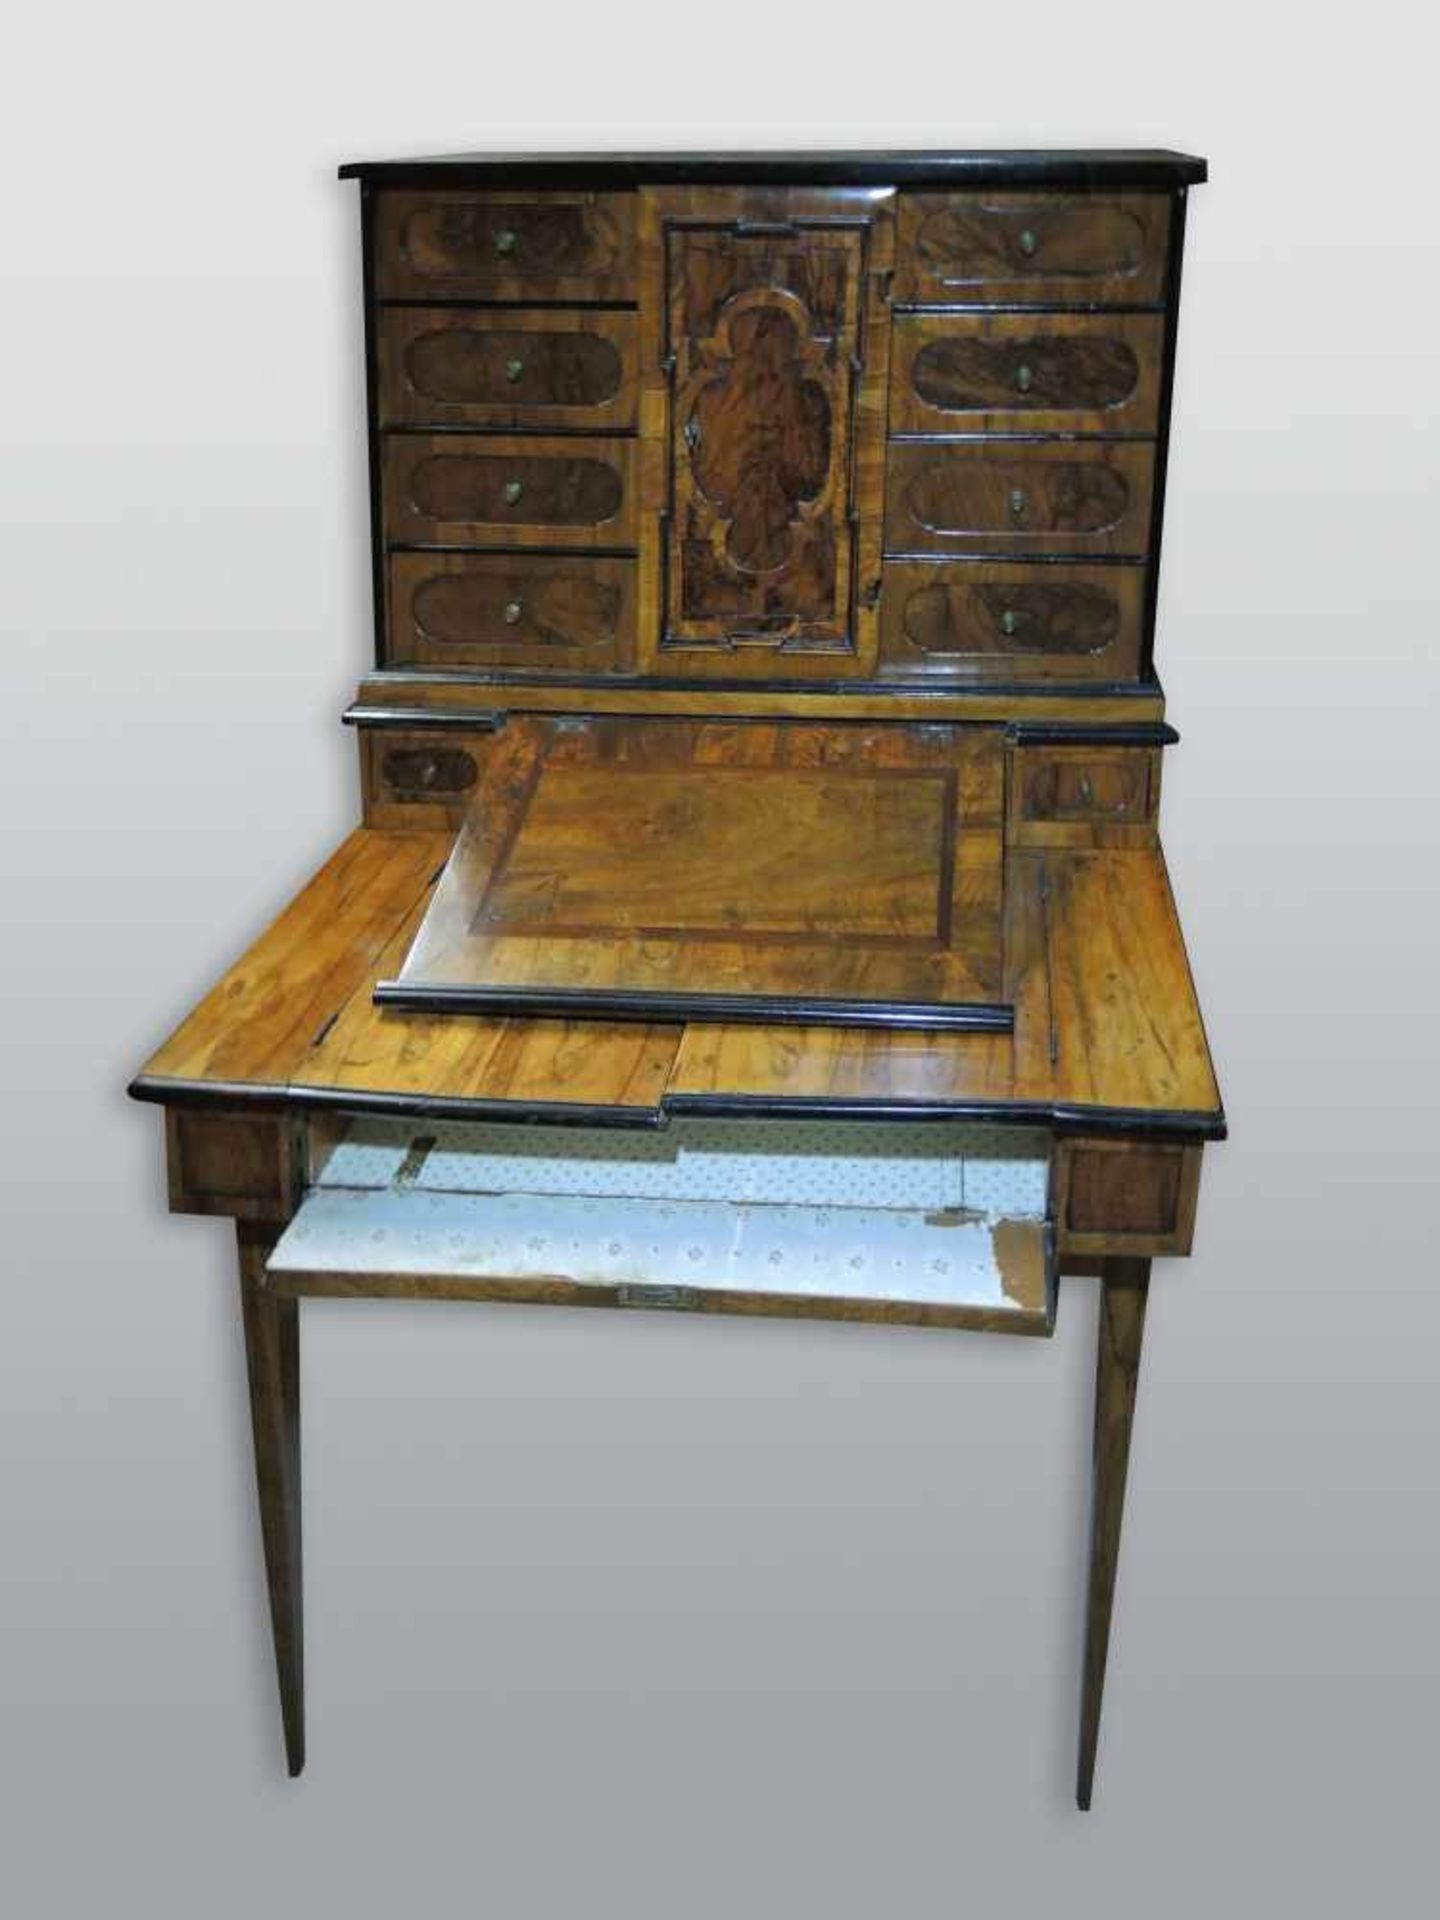 Aufsatz-Schreibmöbel mit TabernakelNussbaum-Untergestell. Aufsatz um 1820, Untergestell um 1860. - Bild 3 aus 3